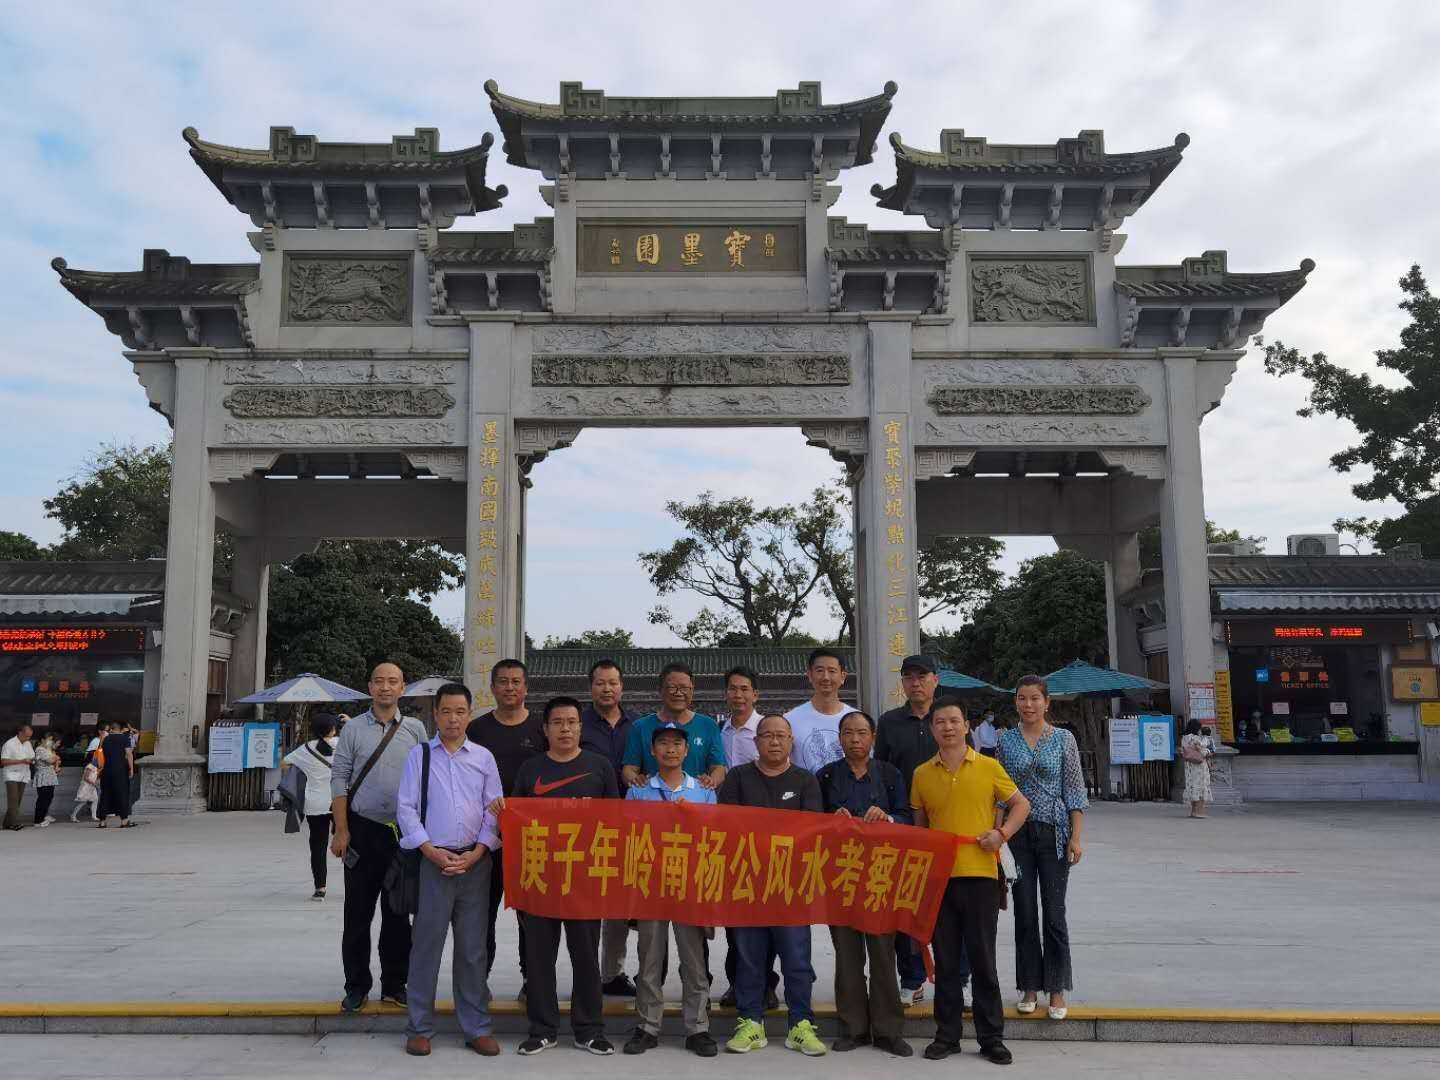 曾祥裕 于11月28日在广州番禺举办了杨公古法风水、择日课学习班